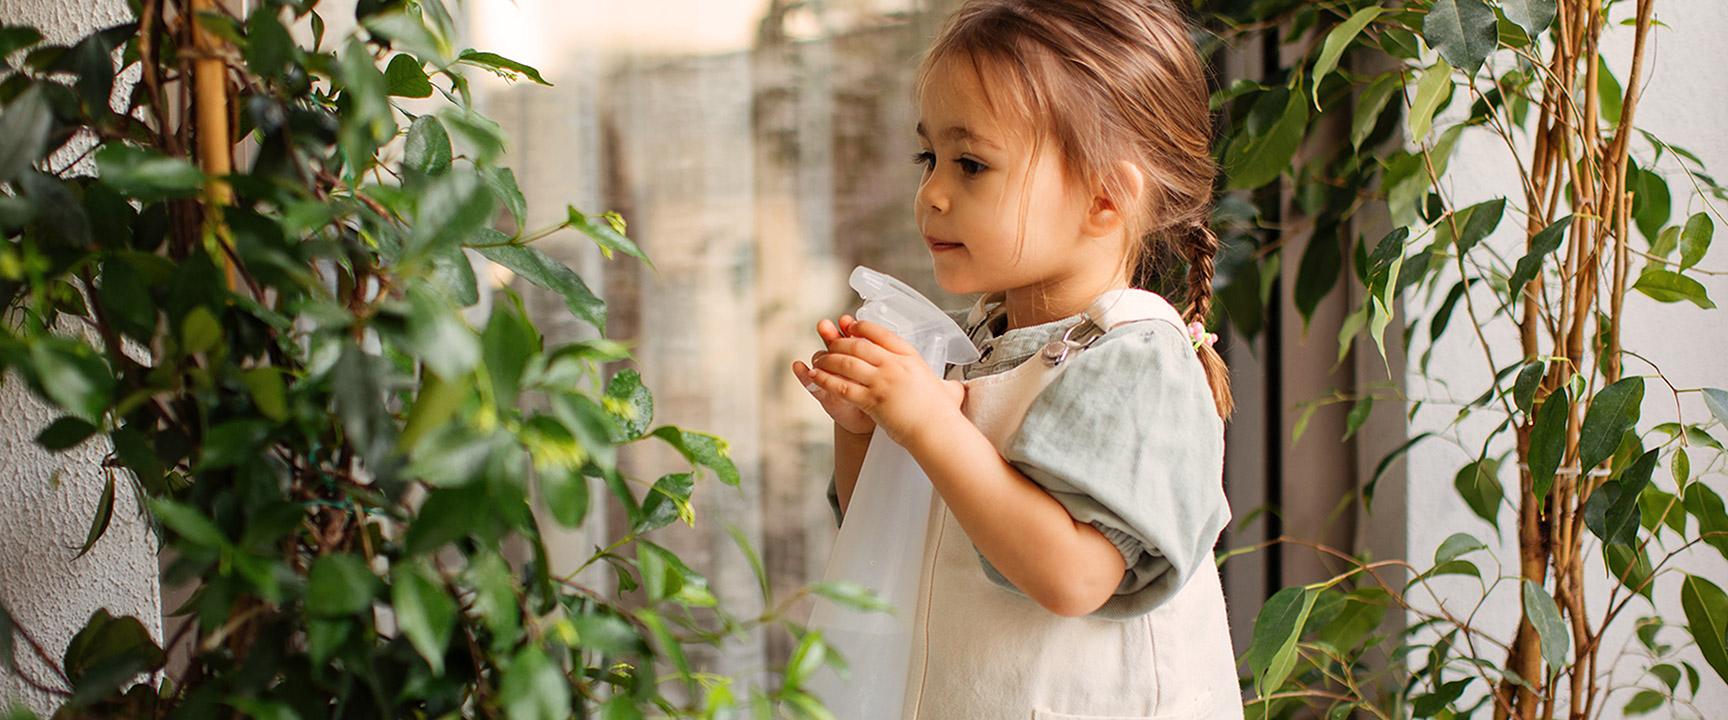 Молодая девушка поливает растение с мистером